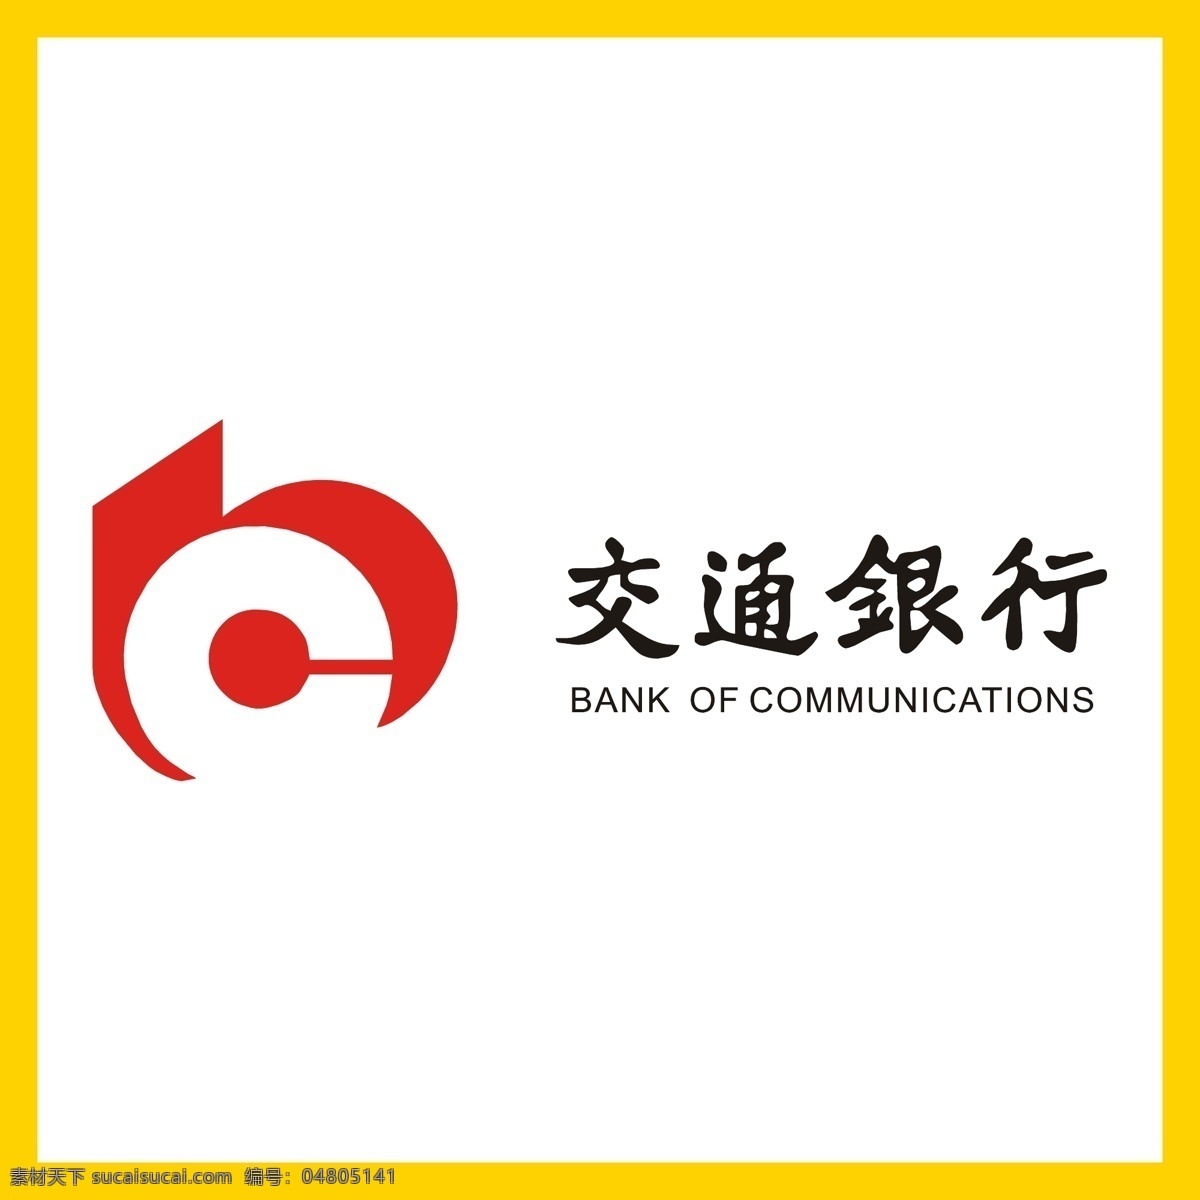 交通银行 银行 信用卡 金融 投资理财 理财产品 贷款 国企 事业单位 logo 标志 矢量 vi logo设计